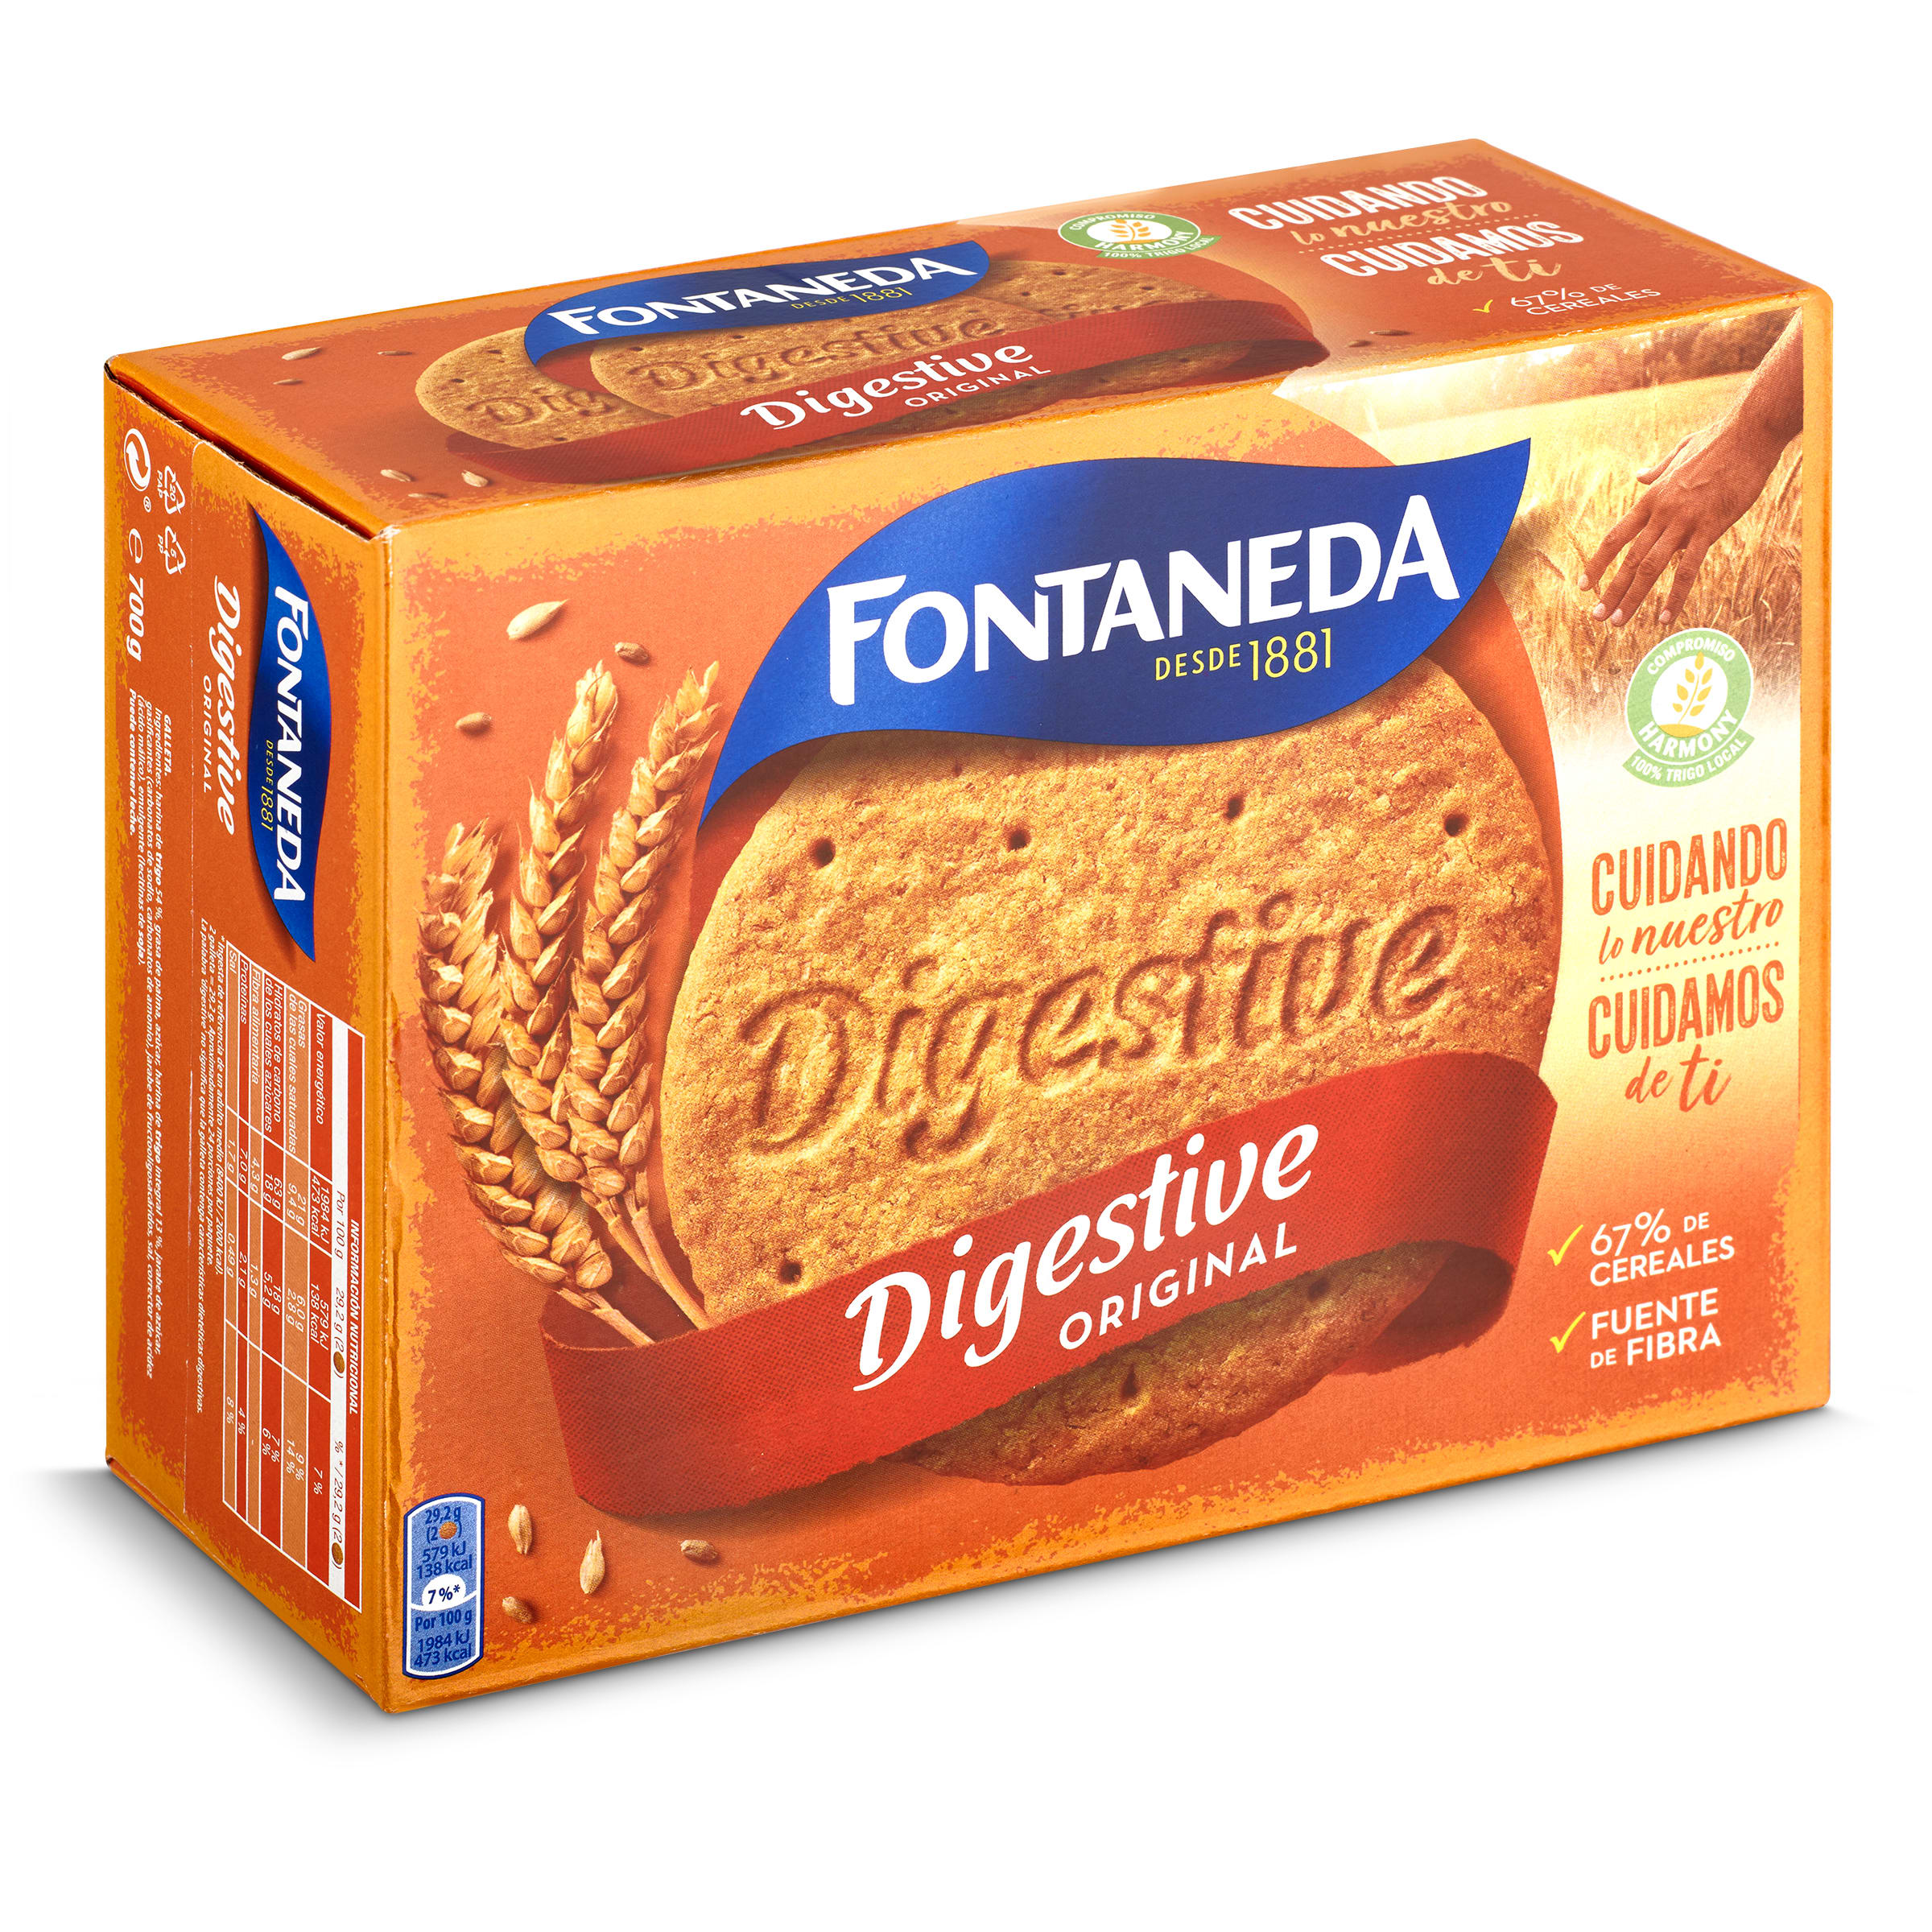 Galletas digestive original Fontaneda caja 700 g - Supermercados DIA